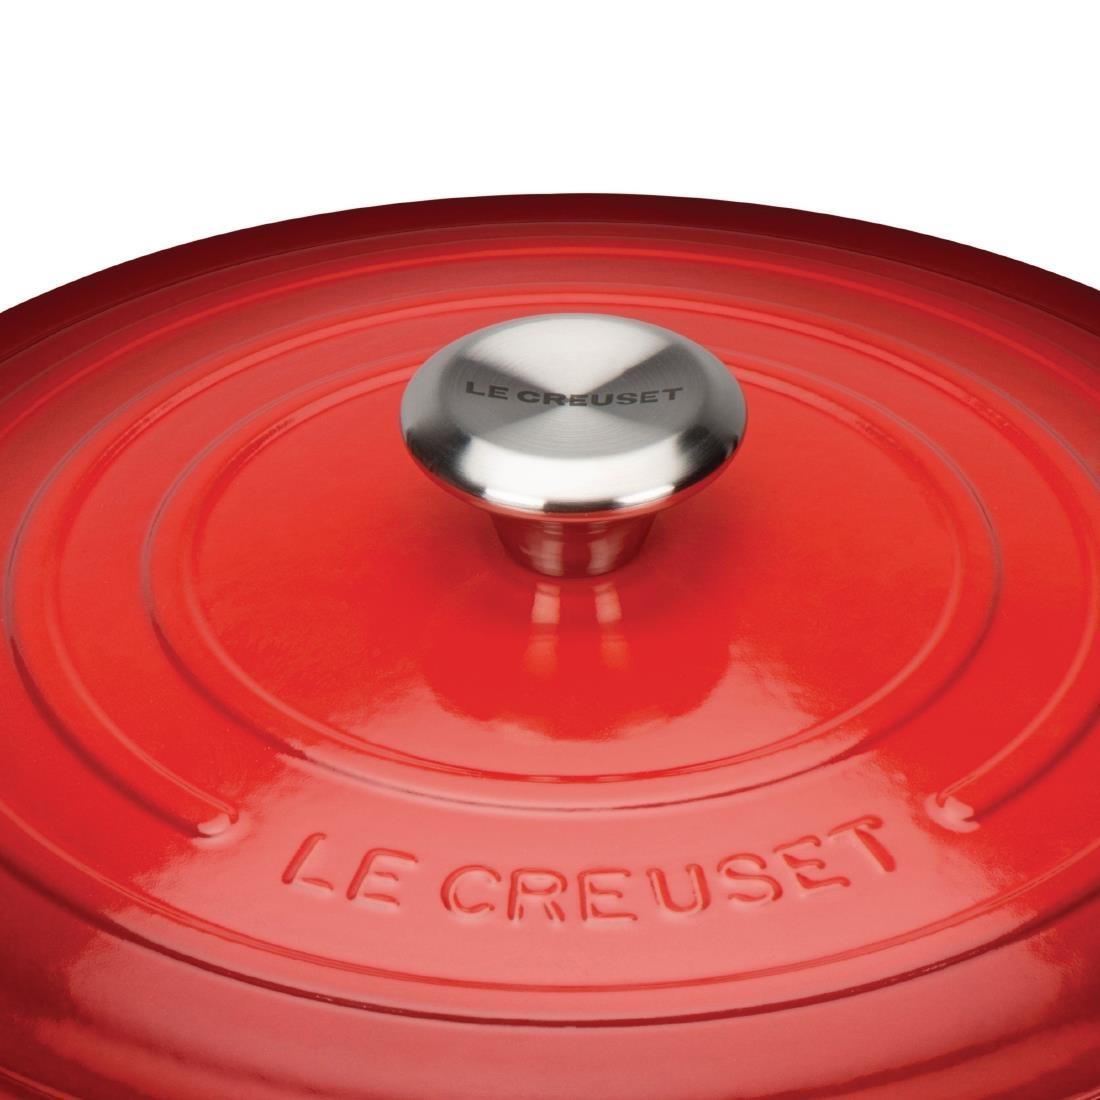 Le Creuset Cast Iron Round Casserole 24cm 4.2L Cerise - DR454  - 5